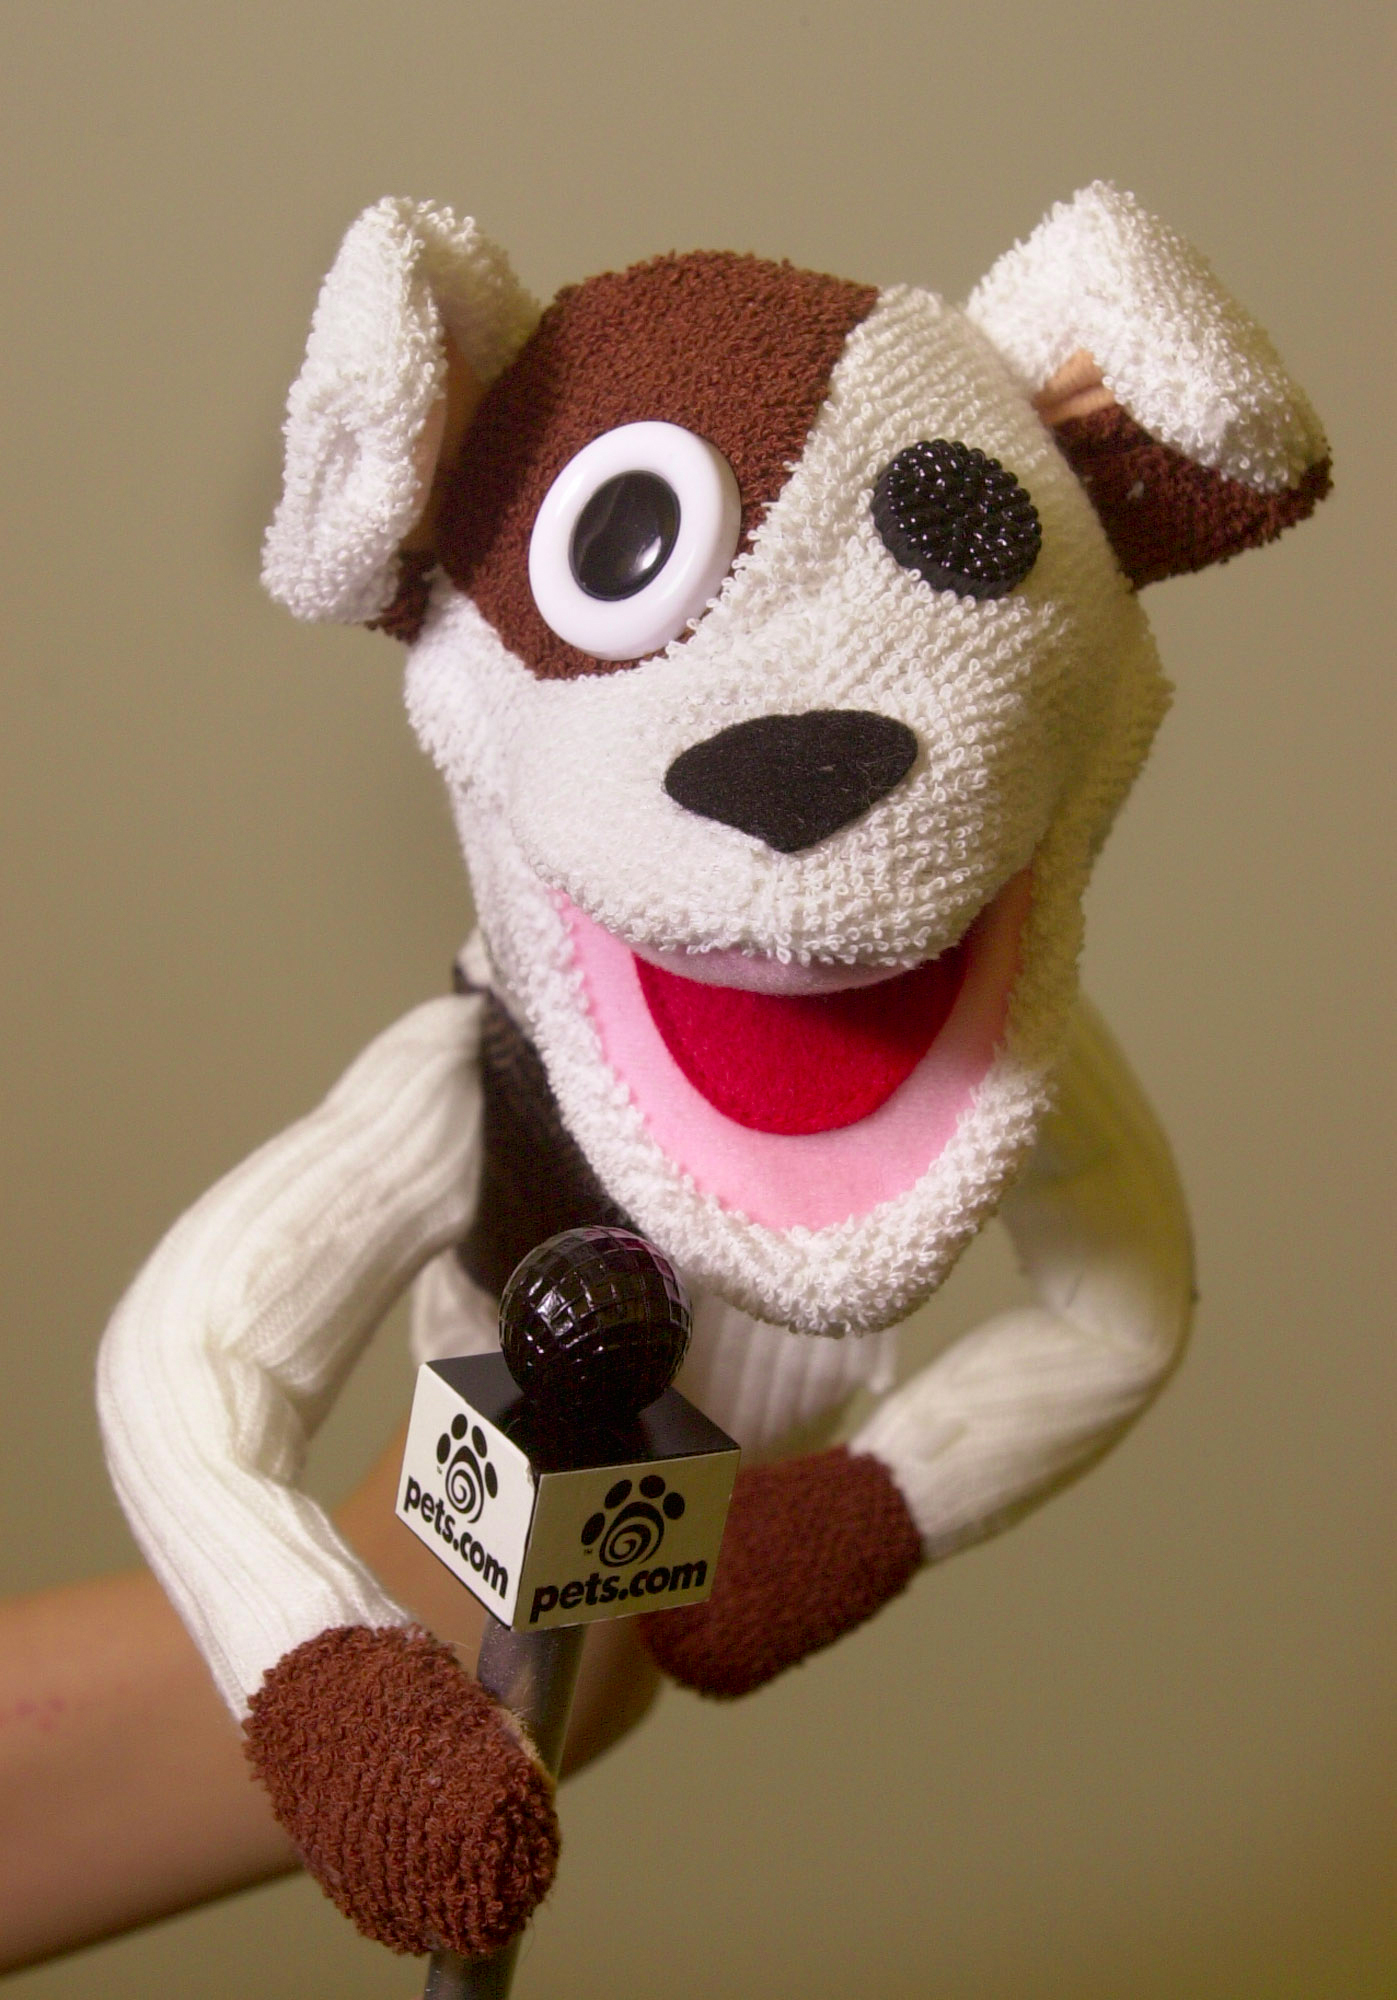 The Pets.com sock puppet.